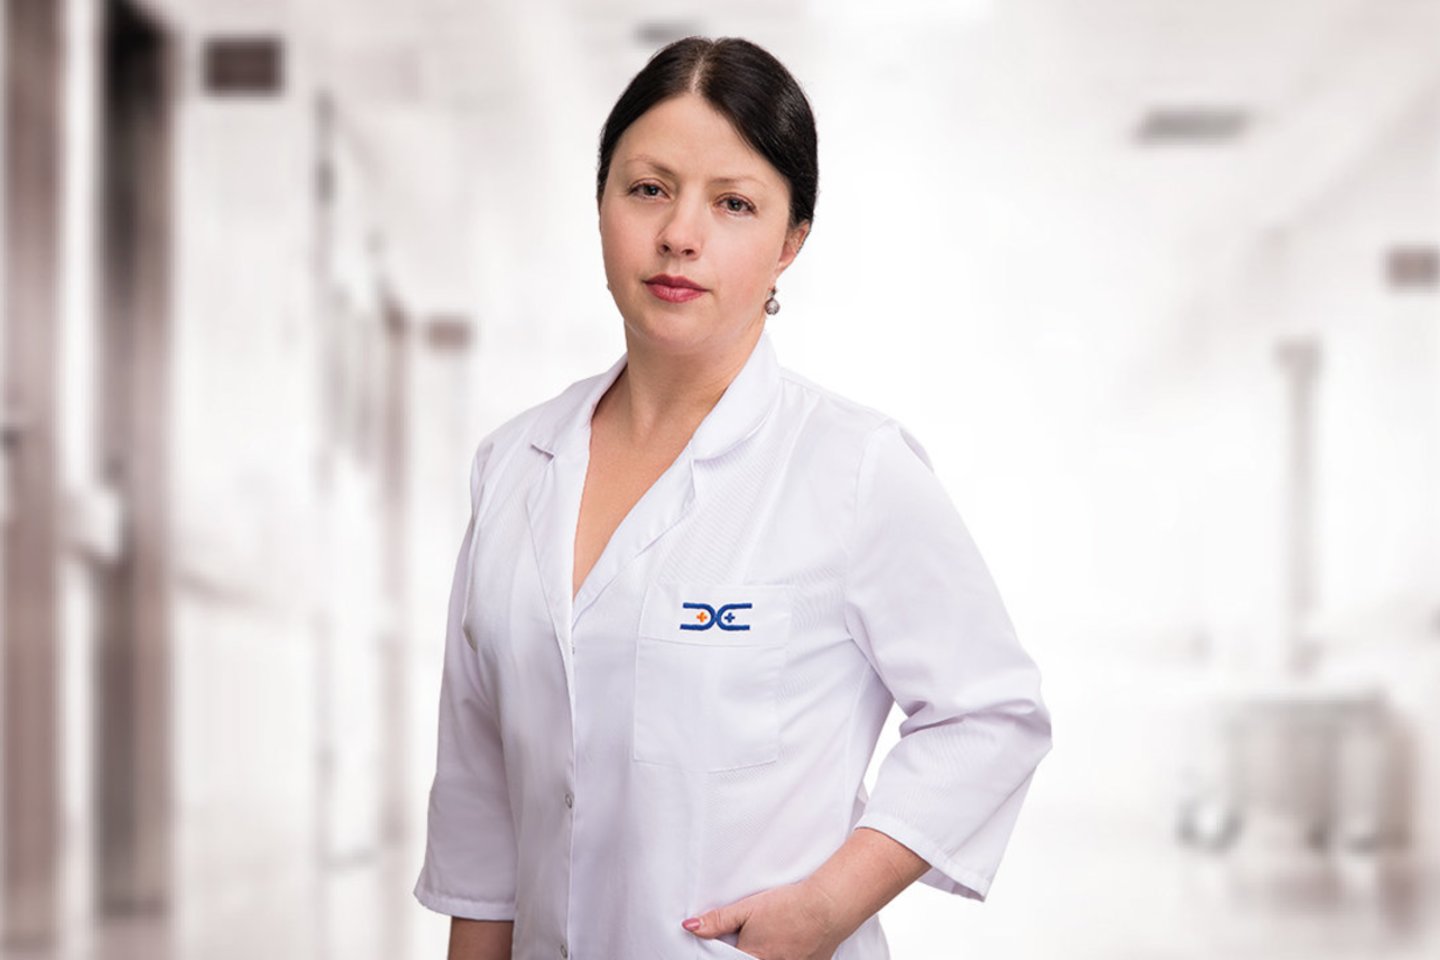  Medicinos diagnostikos ir gydymo centro gydytoja mamologė, akušerė-ginekologė Julija Vitko.<br> MDGC nuotr. 